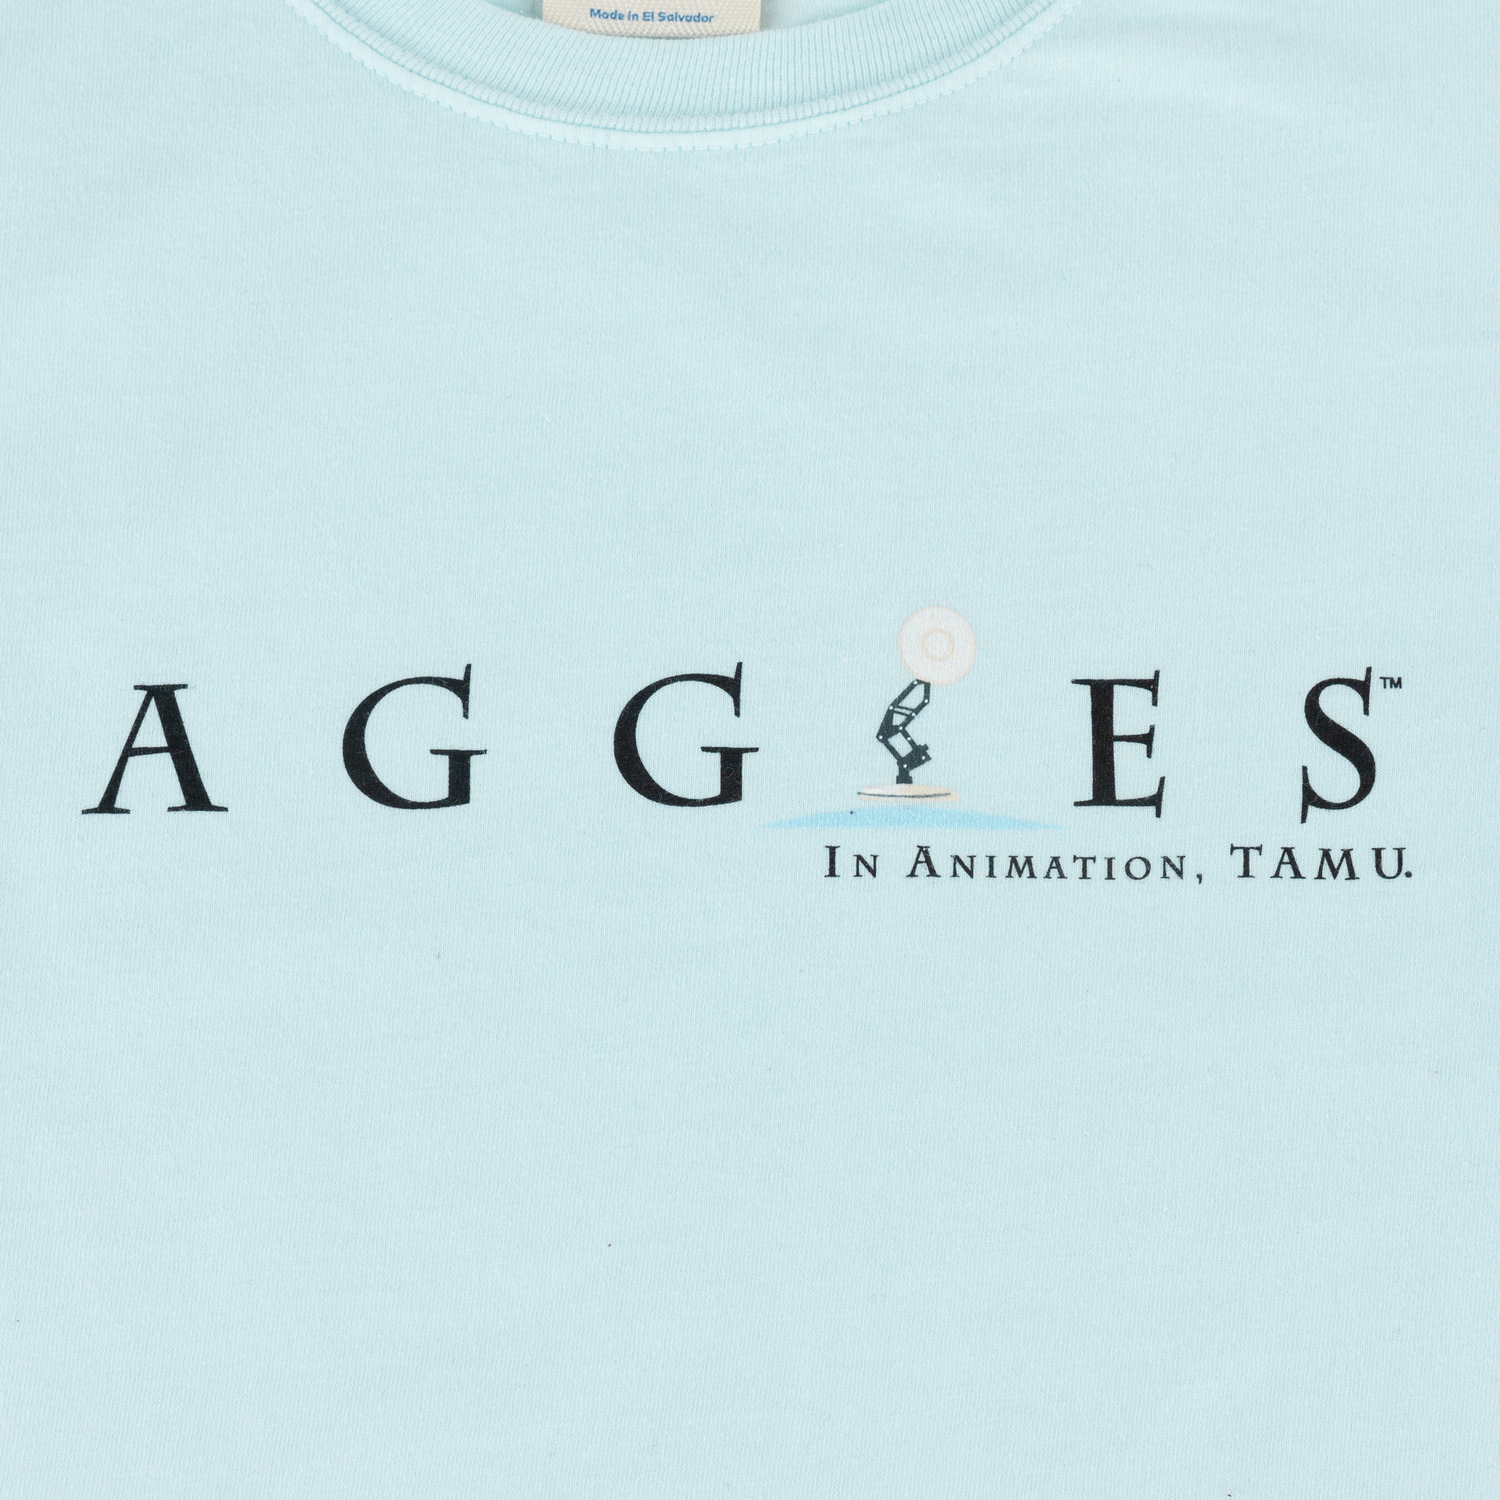 Texas A&M Aggies Animation T-Shirt